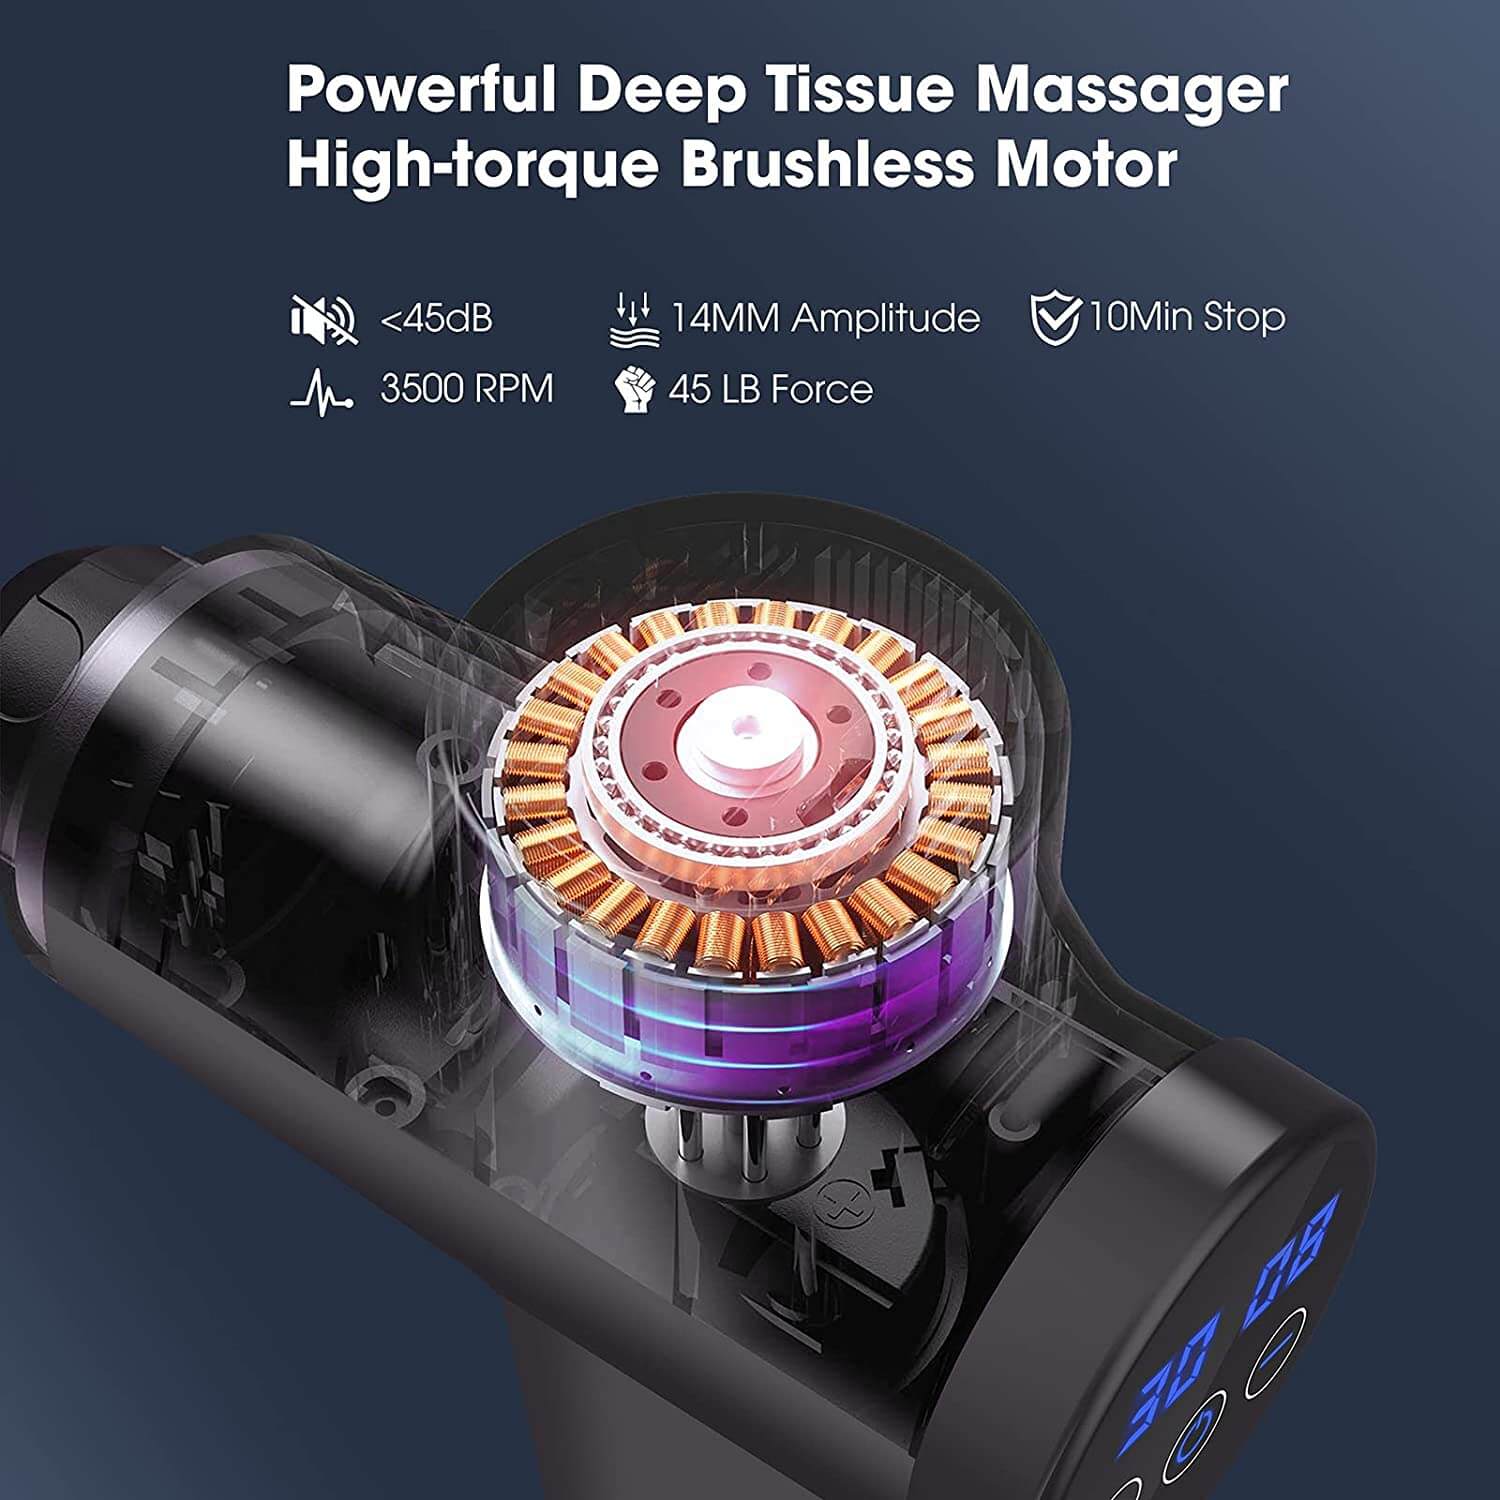 Best Massage Gun